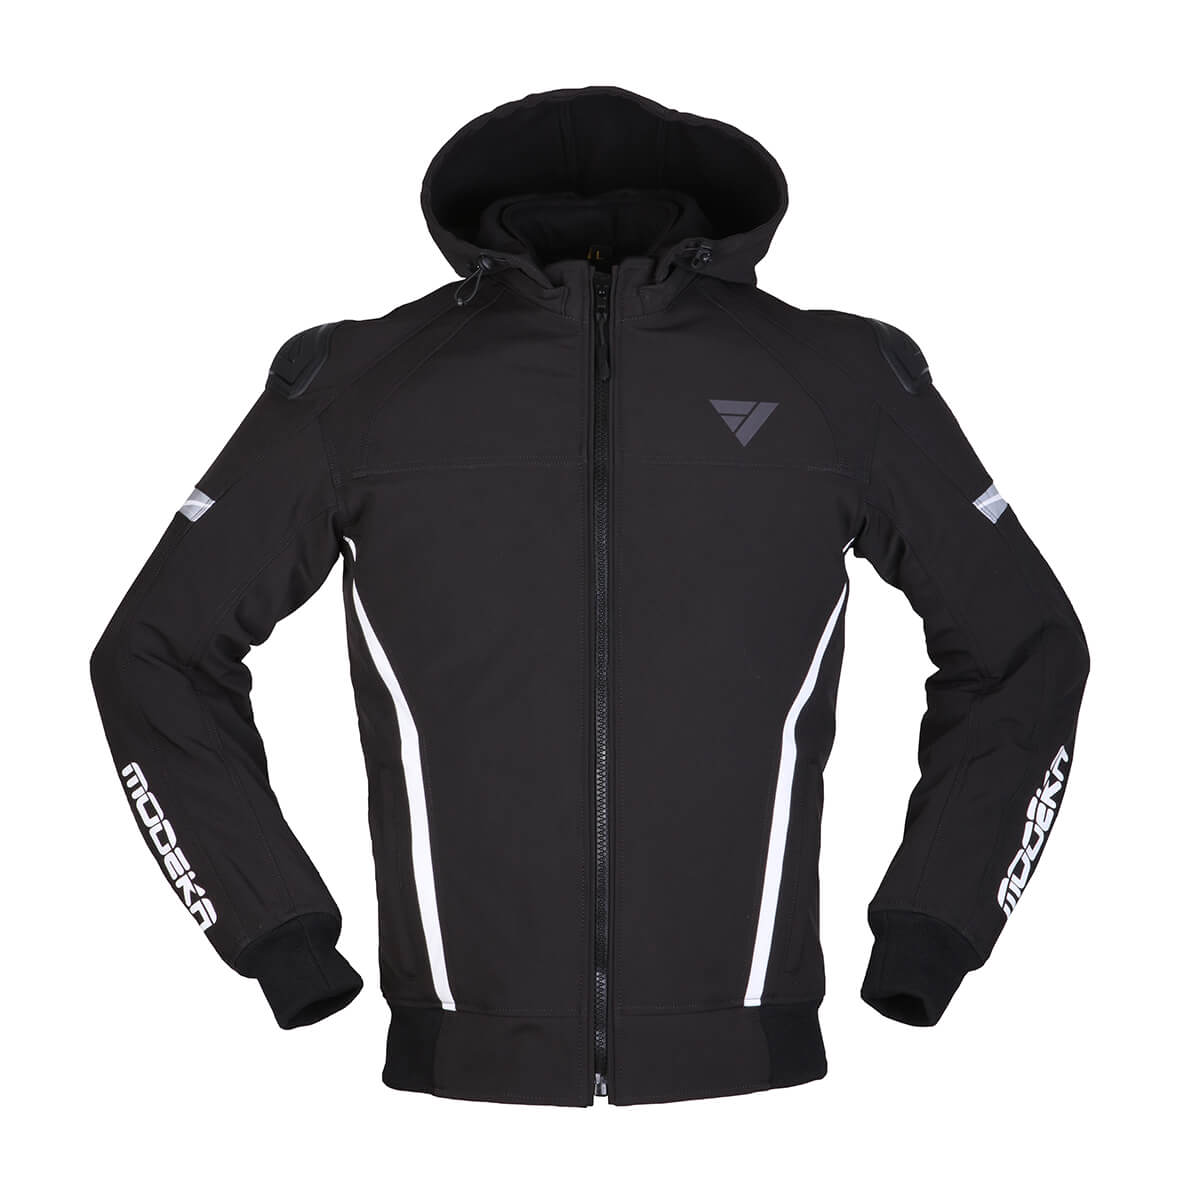 Image of Modeka Clarke Sport Jacket Black White Size M ID 4045765189481